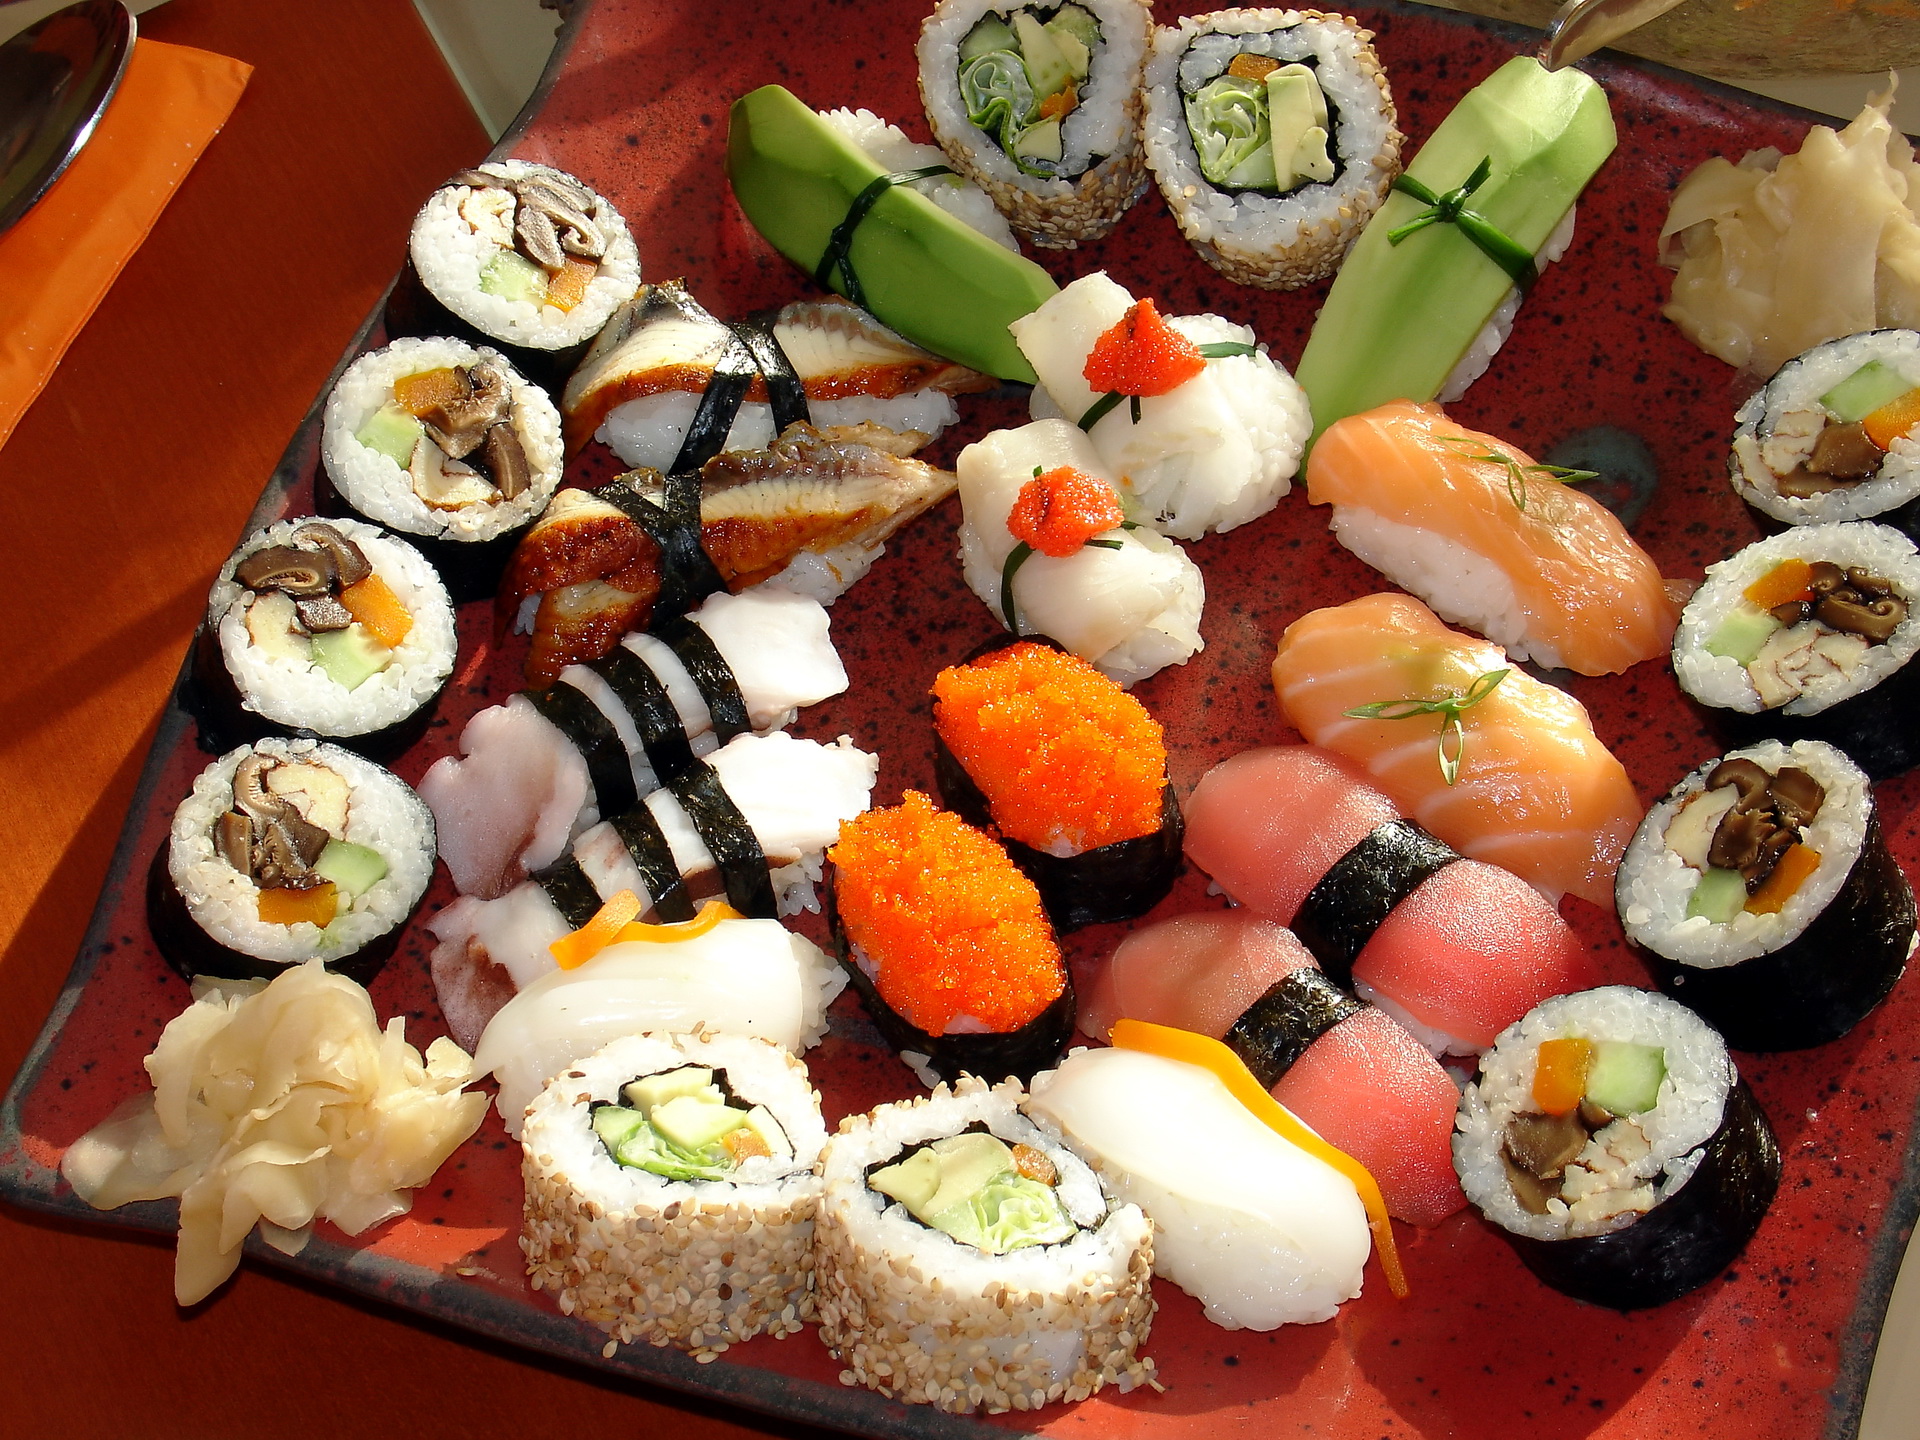 Fotos von Sushi Lebensmittel Meeresfrüchte 1920x1440